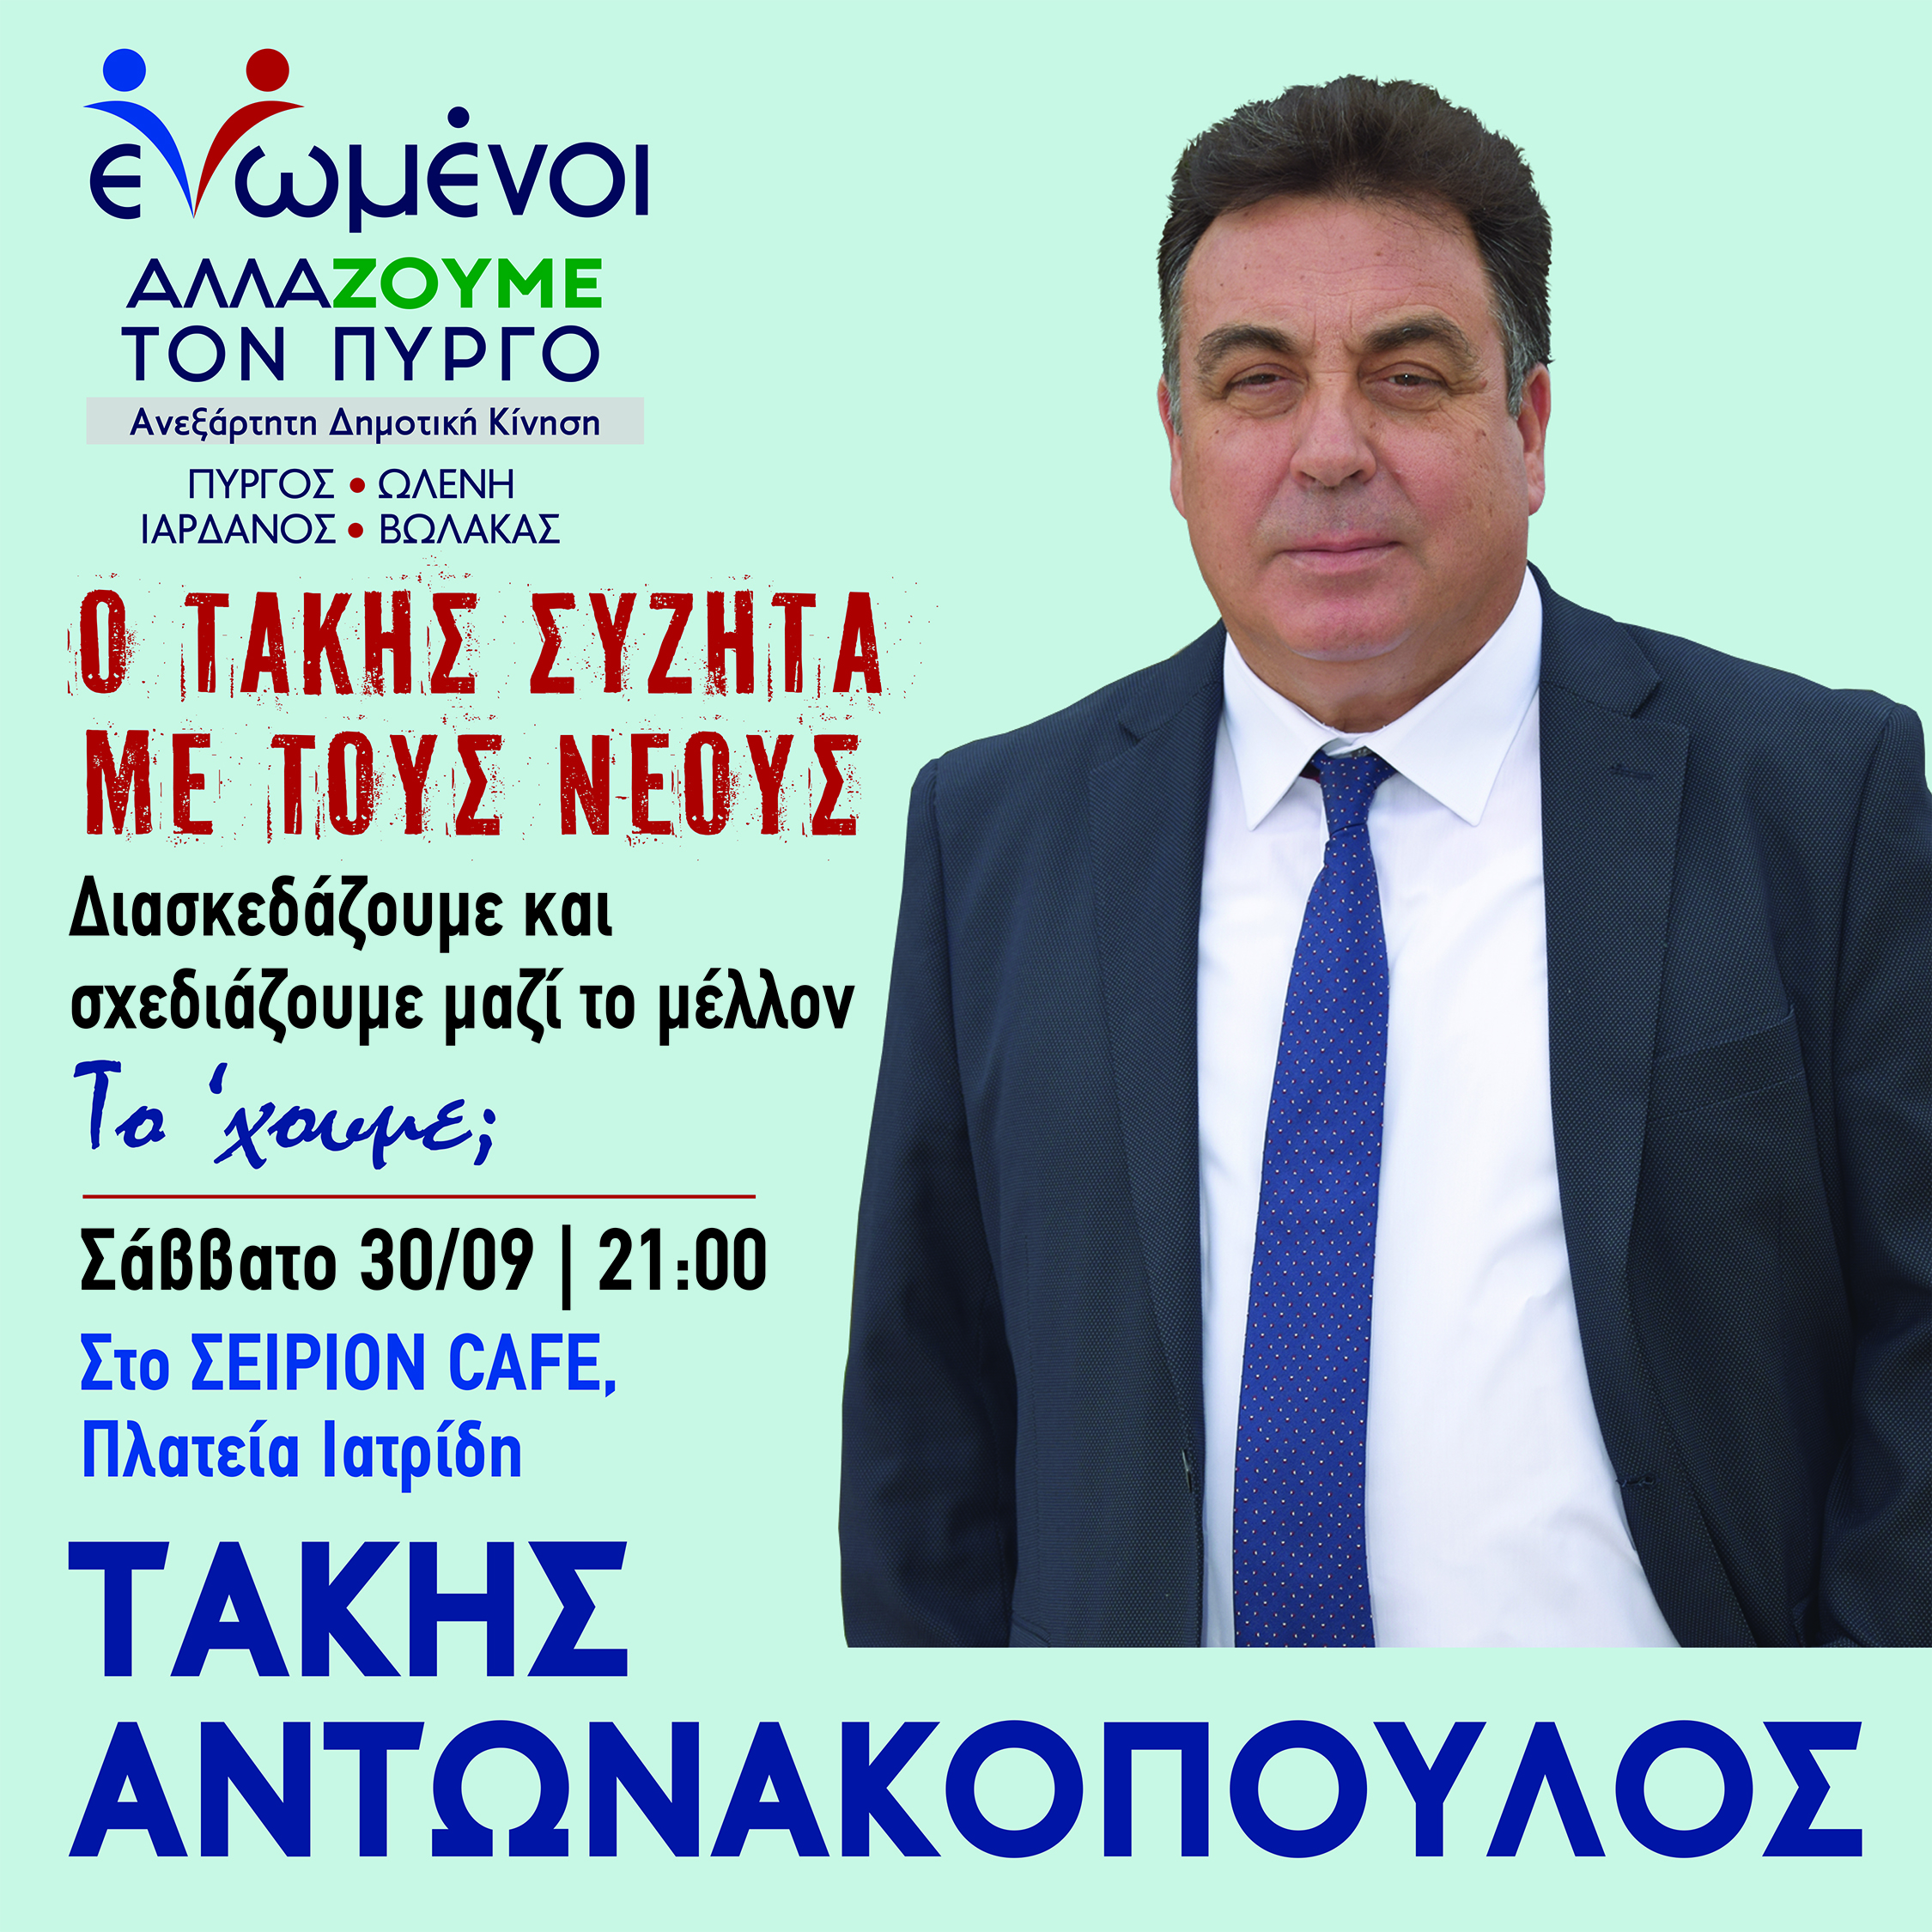 Συνάντηση Τάκη Αντωνακόπουλου με τη νέα γενιά - Σάββατο 30/9 στις 21.00 στο Café ΣΕΙΡΙΟΝ (Πλ. Ιατρίδη)